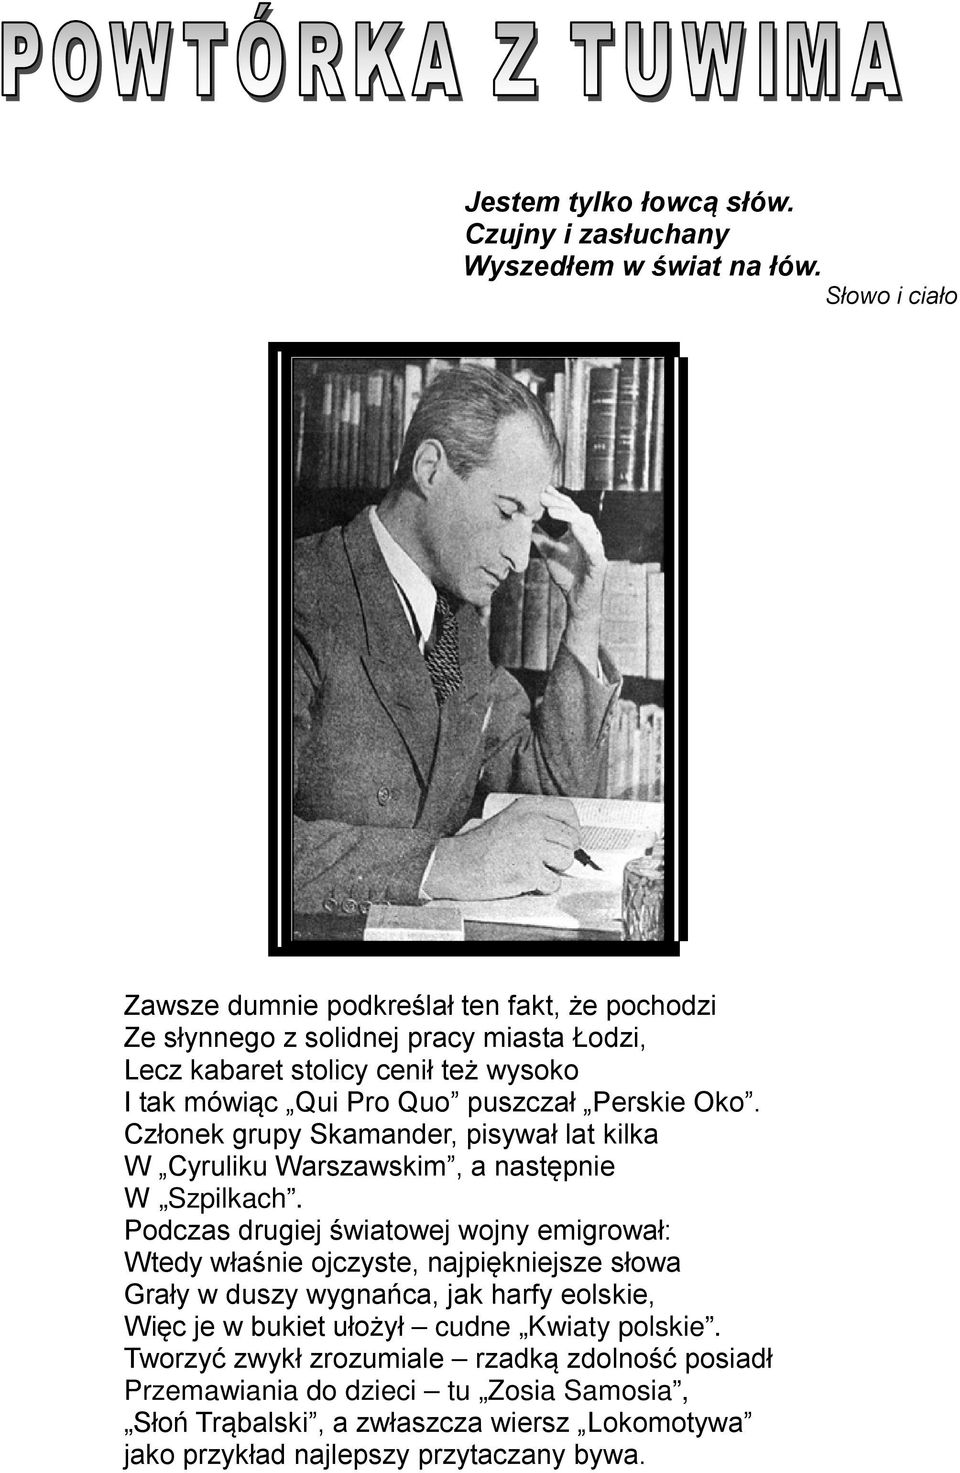 Perskie Oko. Członek grupy Skamander, pisywał lat kilka W Cyruliku Warszawskim, a następnie W Szpilkach.